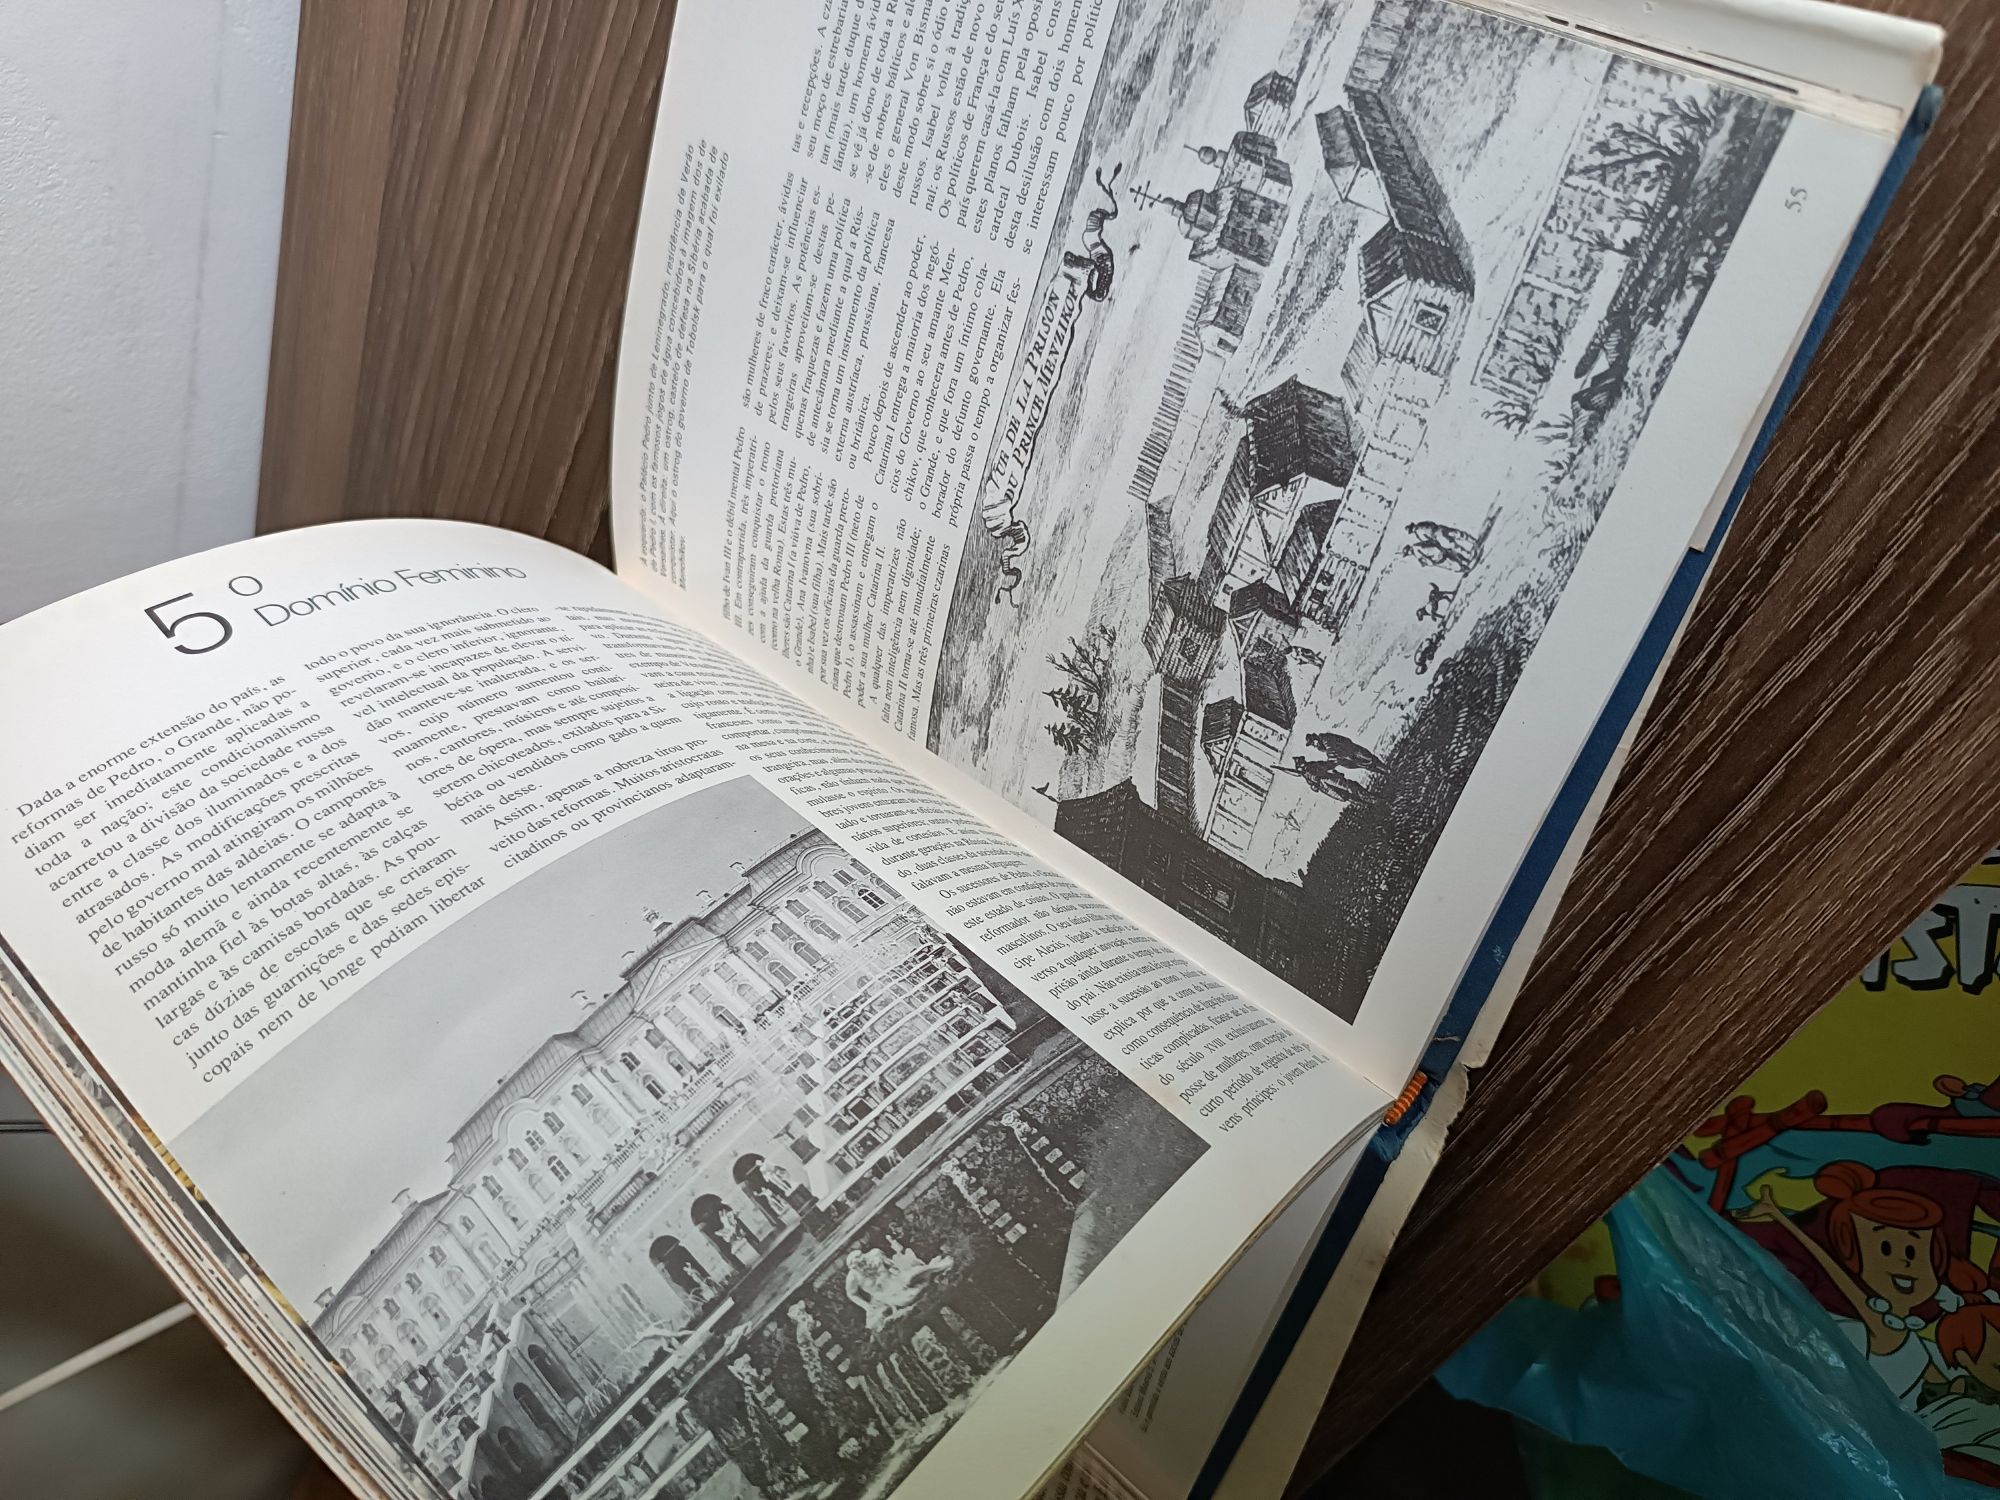 Livro histórico "História da Rússia " 1979